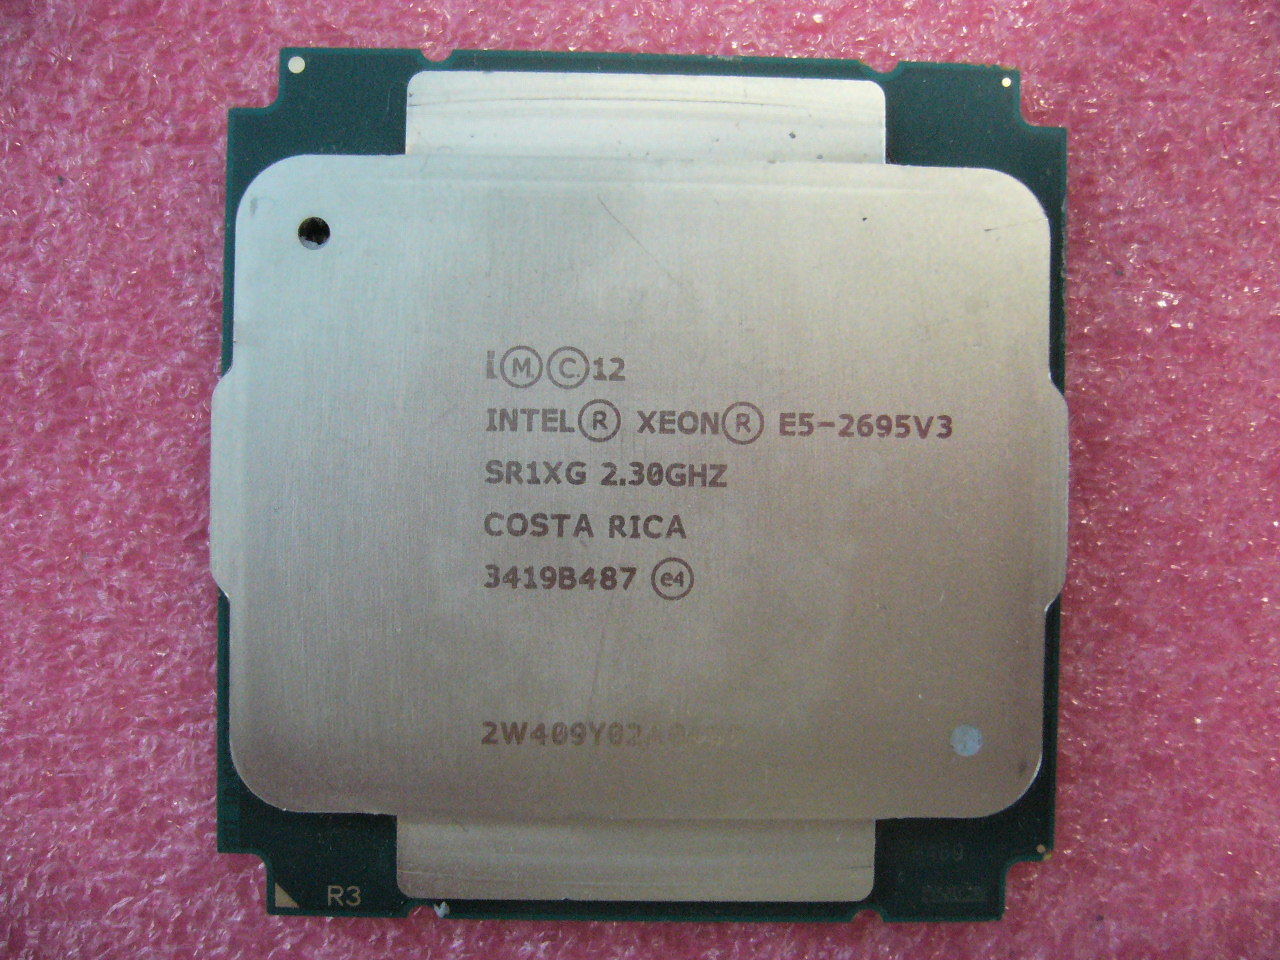 QTY 1x Intel E5-2695 V3 Xeon CPU 14-Cores 2.3Ghz 35MB Cache LGA2011 SR1XG - Click Image to Close